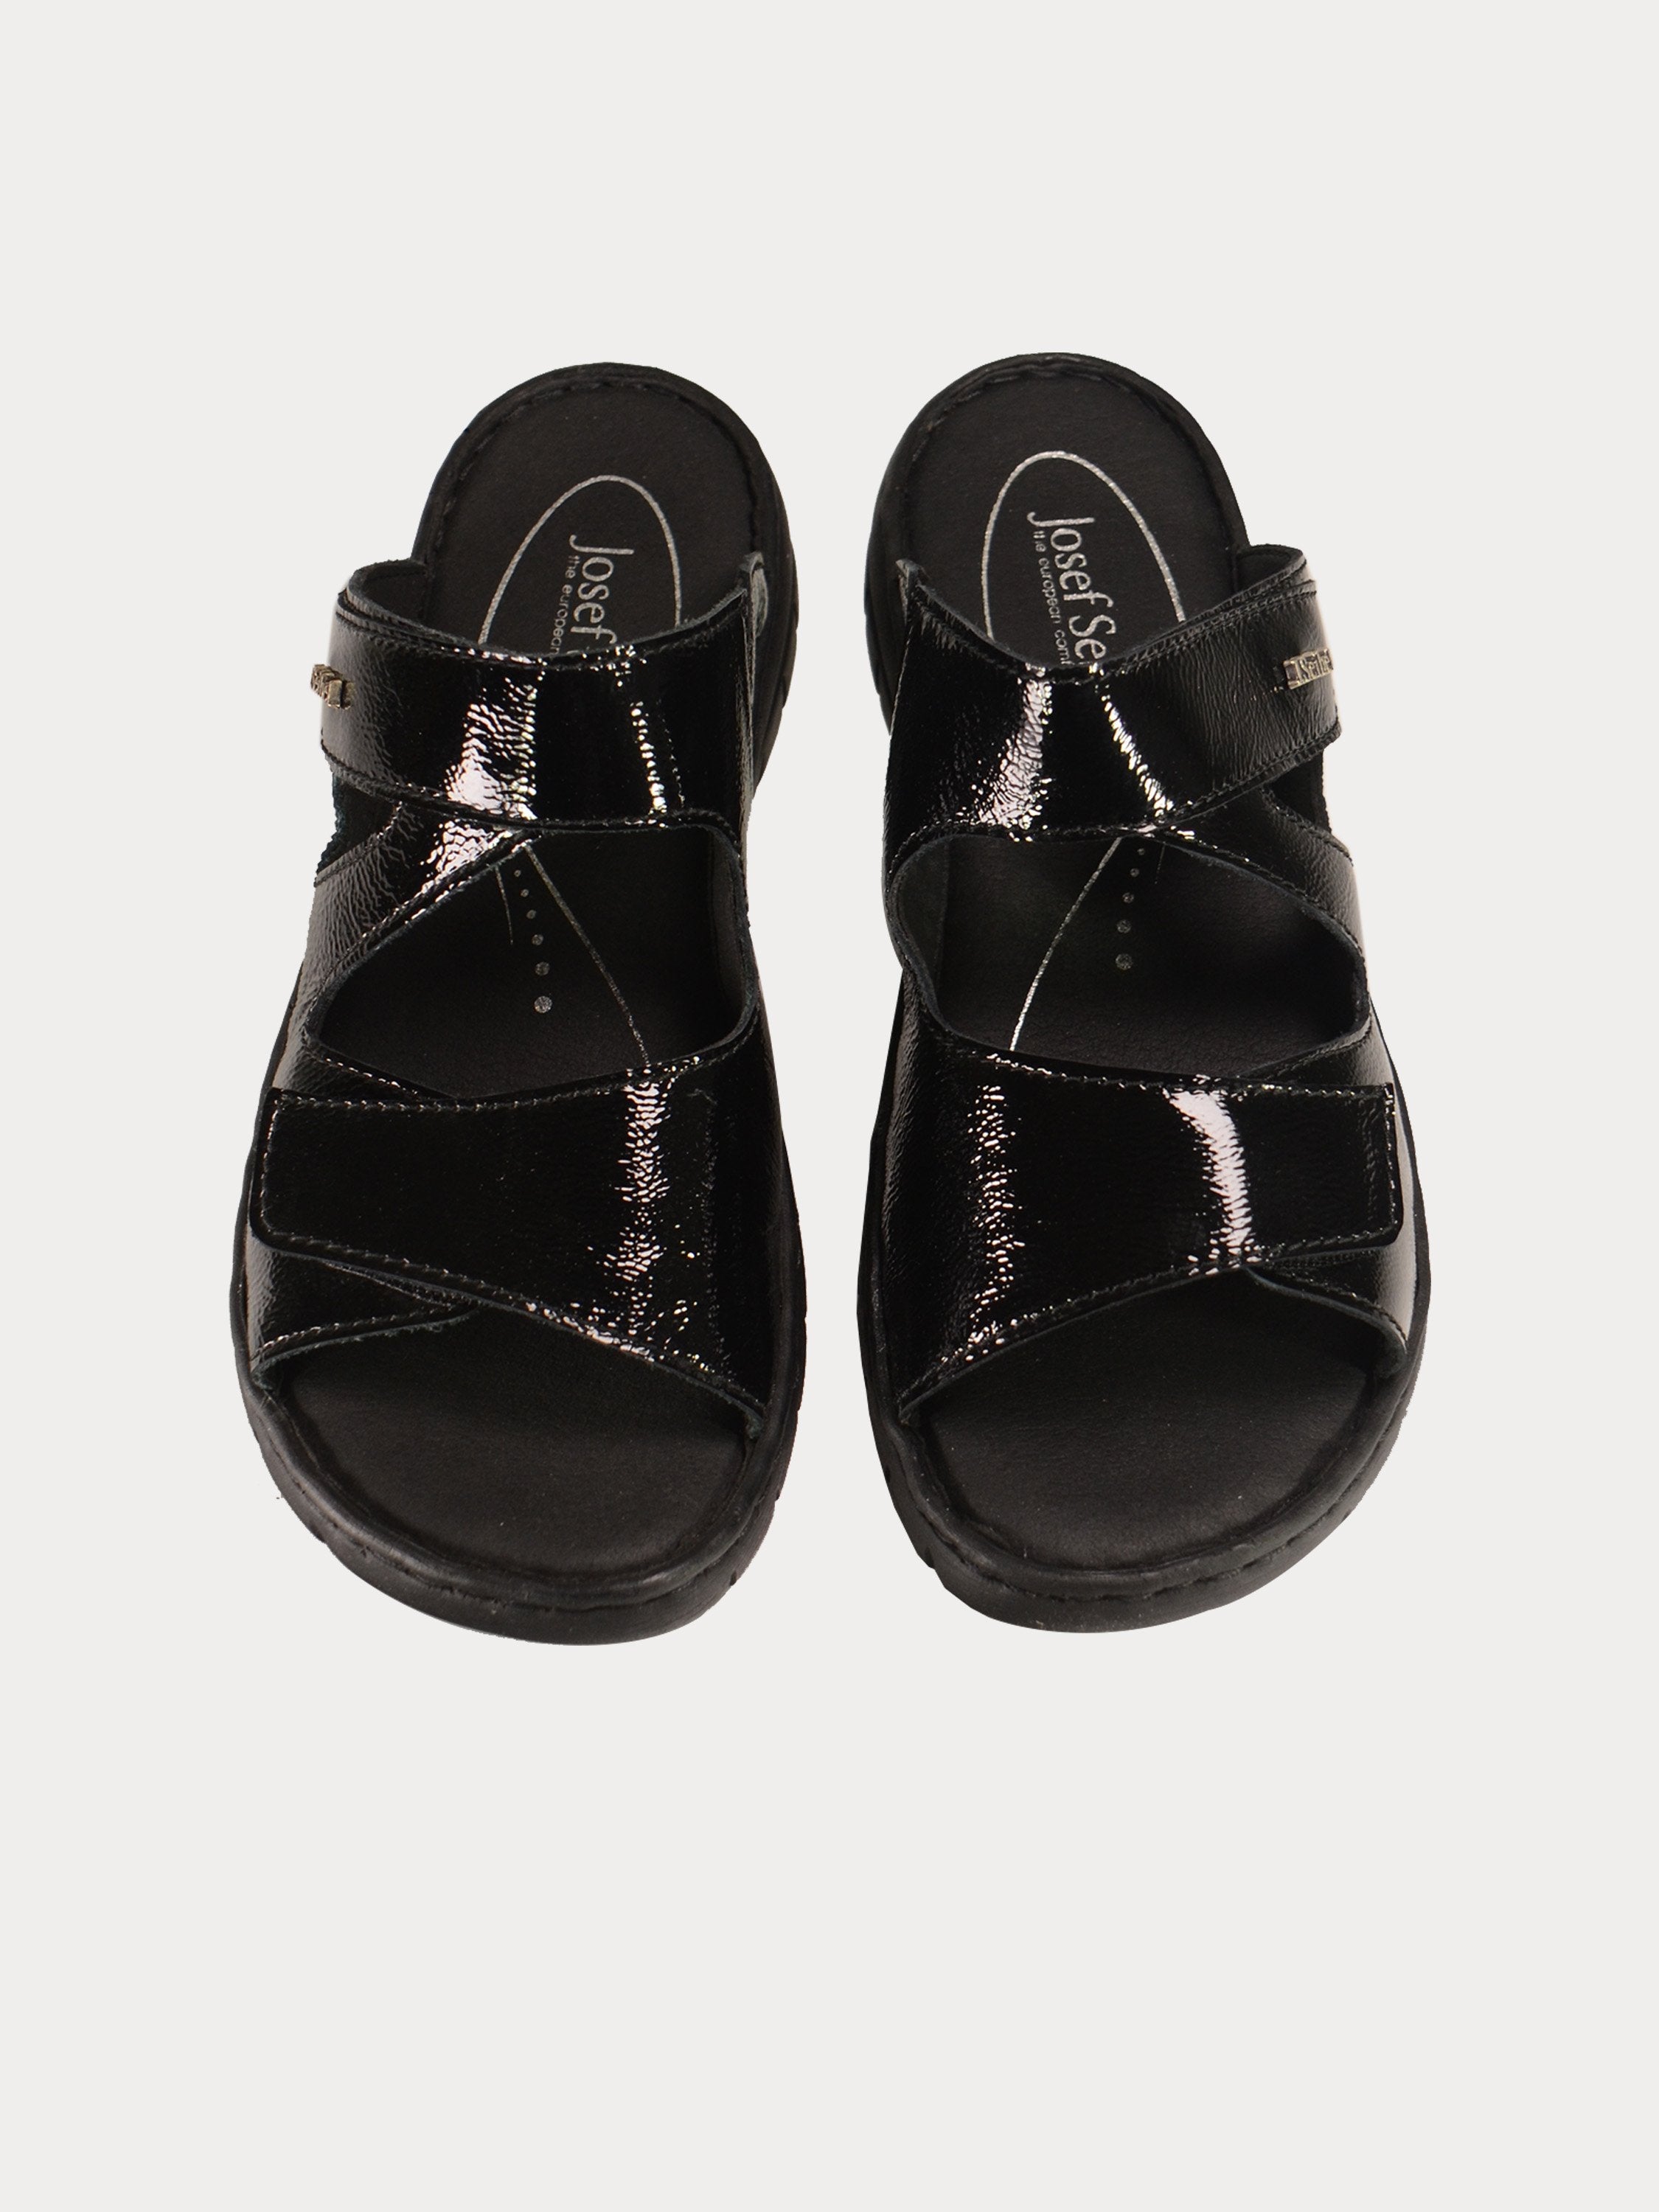 Josef Seibel Women Slider Patent Black Sandals #color_Black